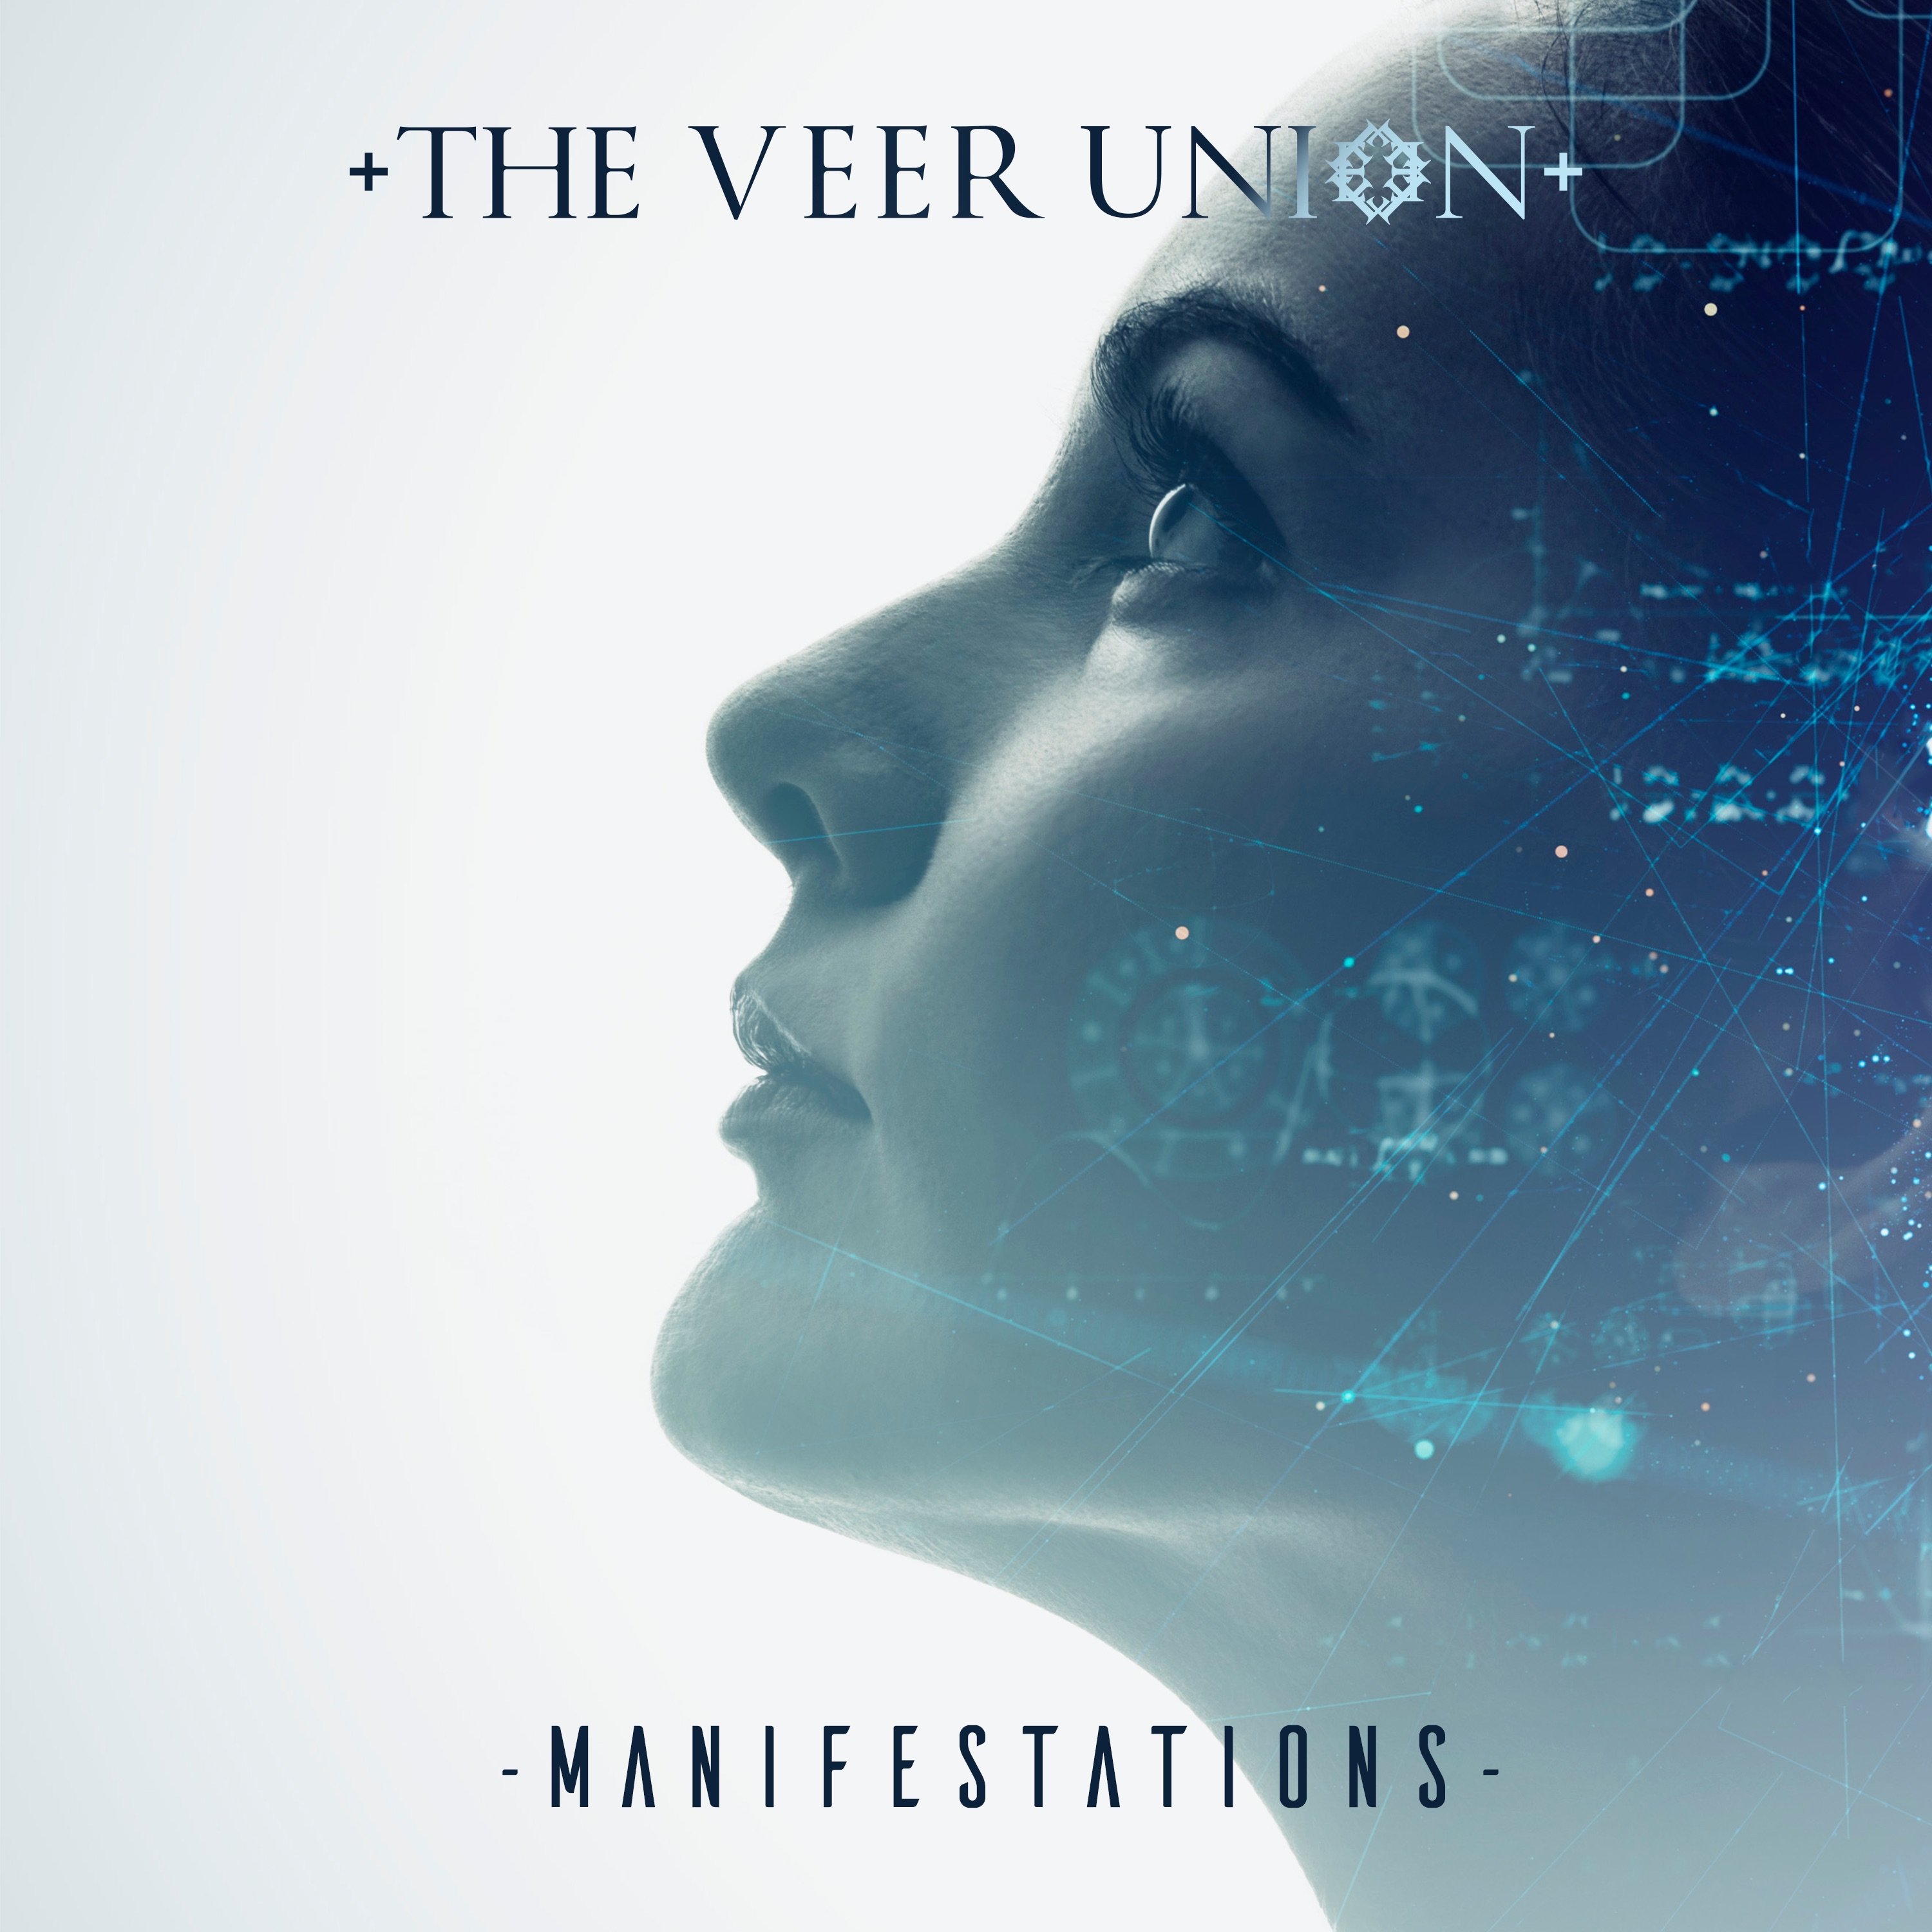 The veer union. The Veer Union 2022. The Veer Union manifestations Ep. The Veer Union фото. The Veer Union manifestations 2022.